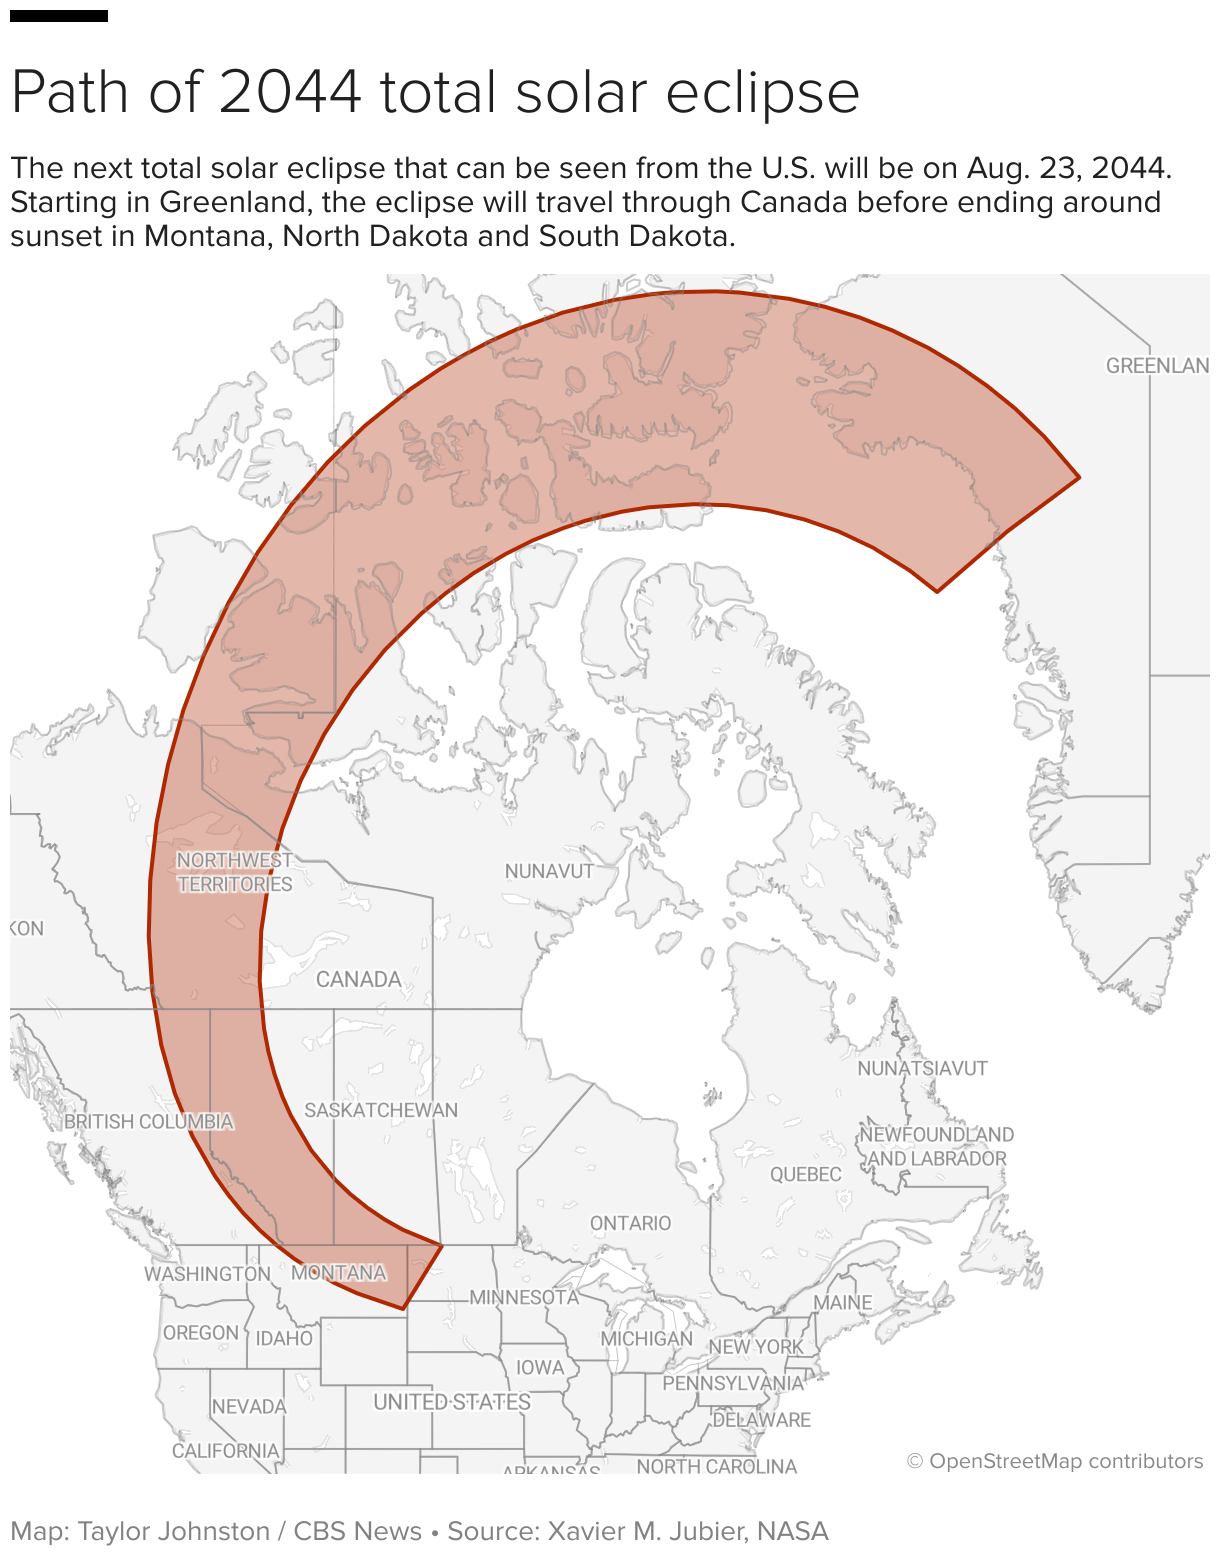 گرین لینڈ، کینیڈا اور ریاستہائے متحدہ کے کچھ حصوں سے 2044 کے مکمل سورج گرہن کا راستہ دکھا رہا ہے۔